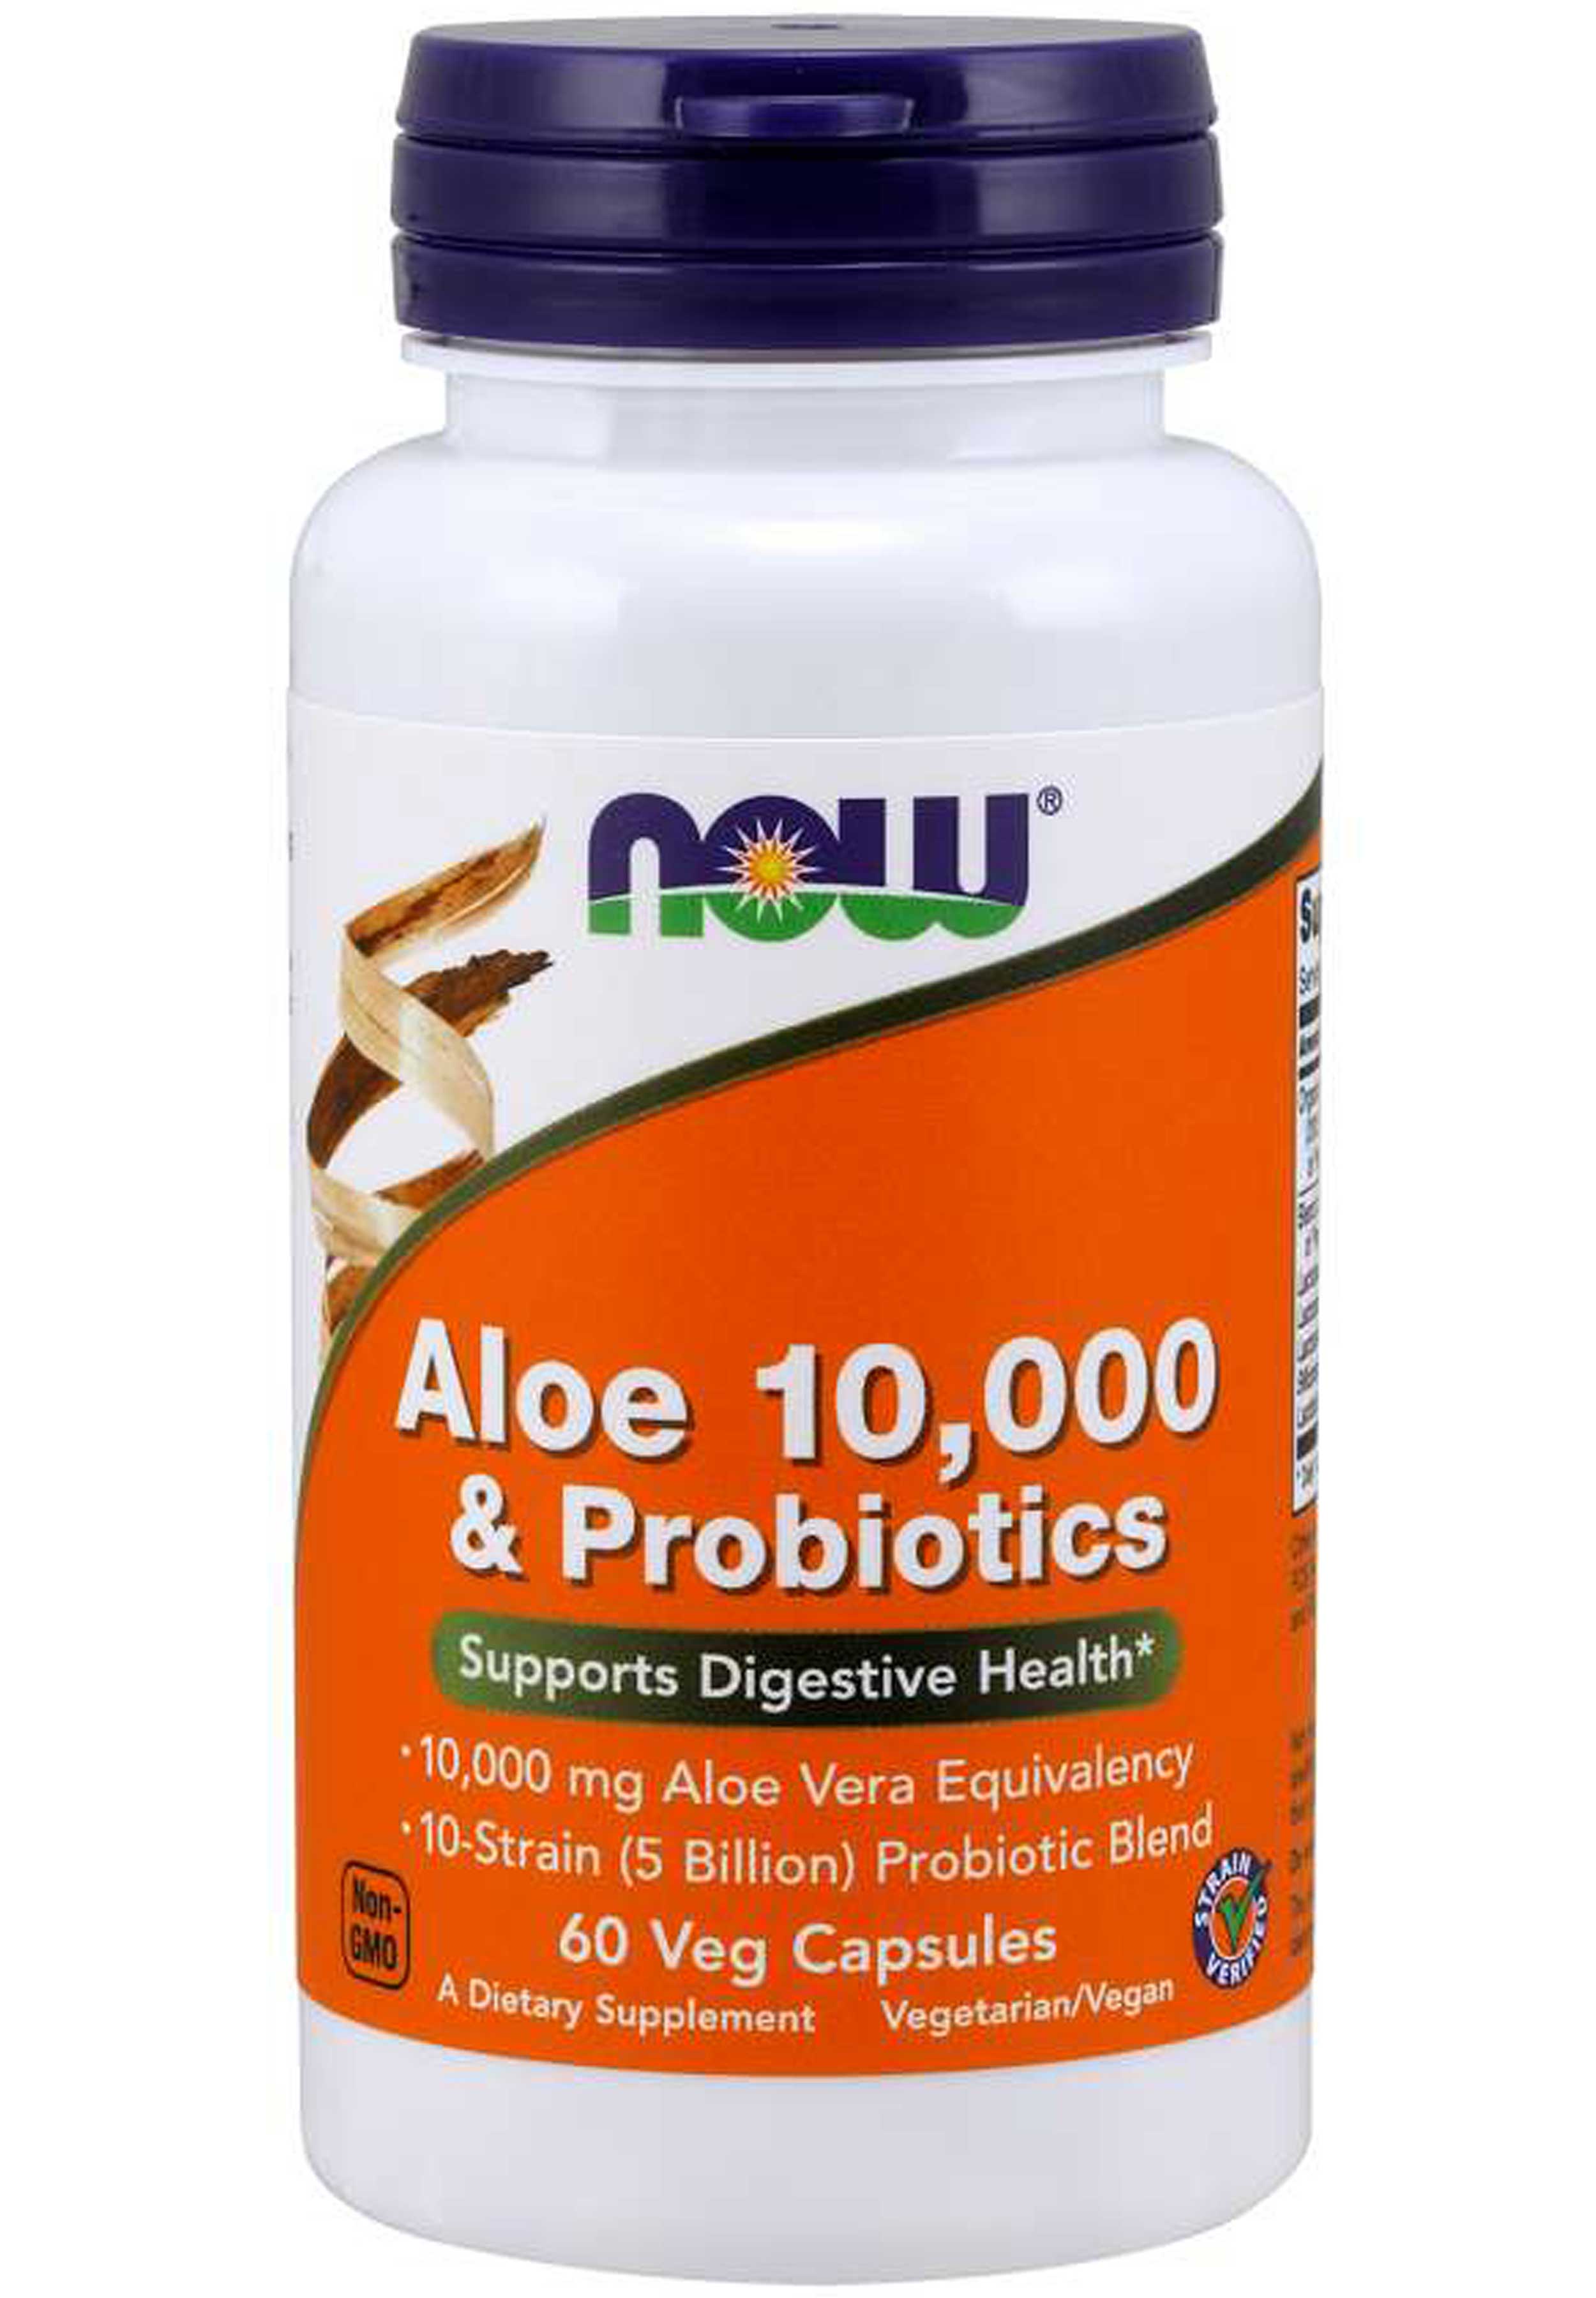 NOW Aloe 10,000 & Probiotics